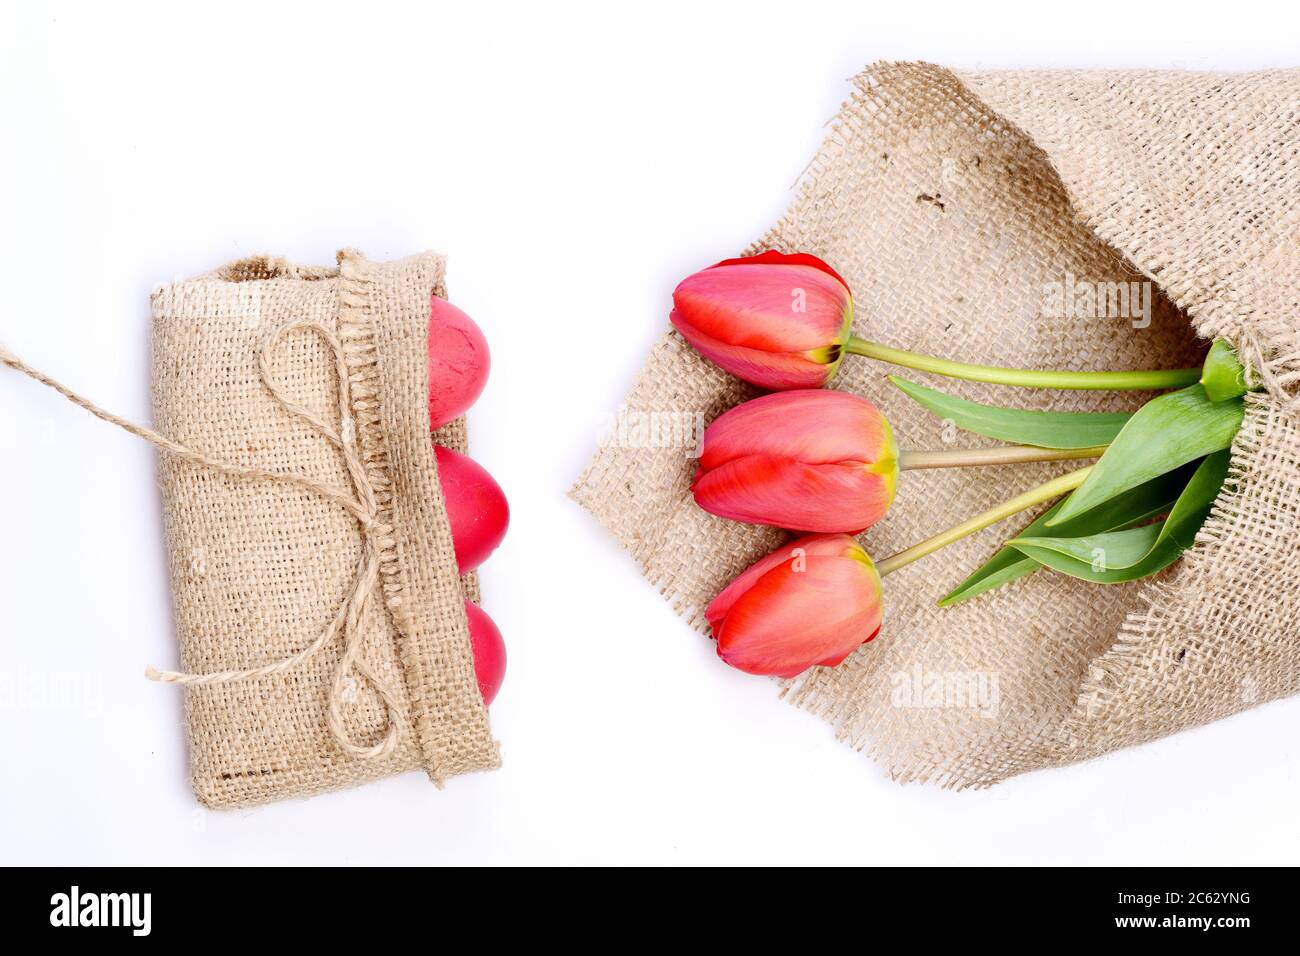 Bouquet de fleurs près des œufs de Pâques roses dans un sac rustique en toile de sacoches avec noeud. Tulipes de couleur rose ou rouge enveloppées de toile de jute sur fond blanc. Concept de vacances heureux. Bouquet de tulipes de printemps pour les vacances Banque D'Images